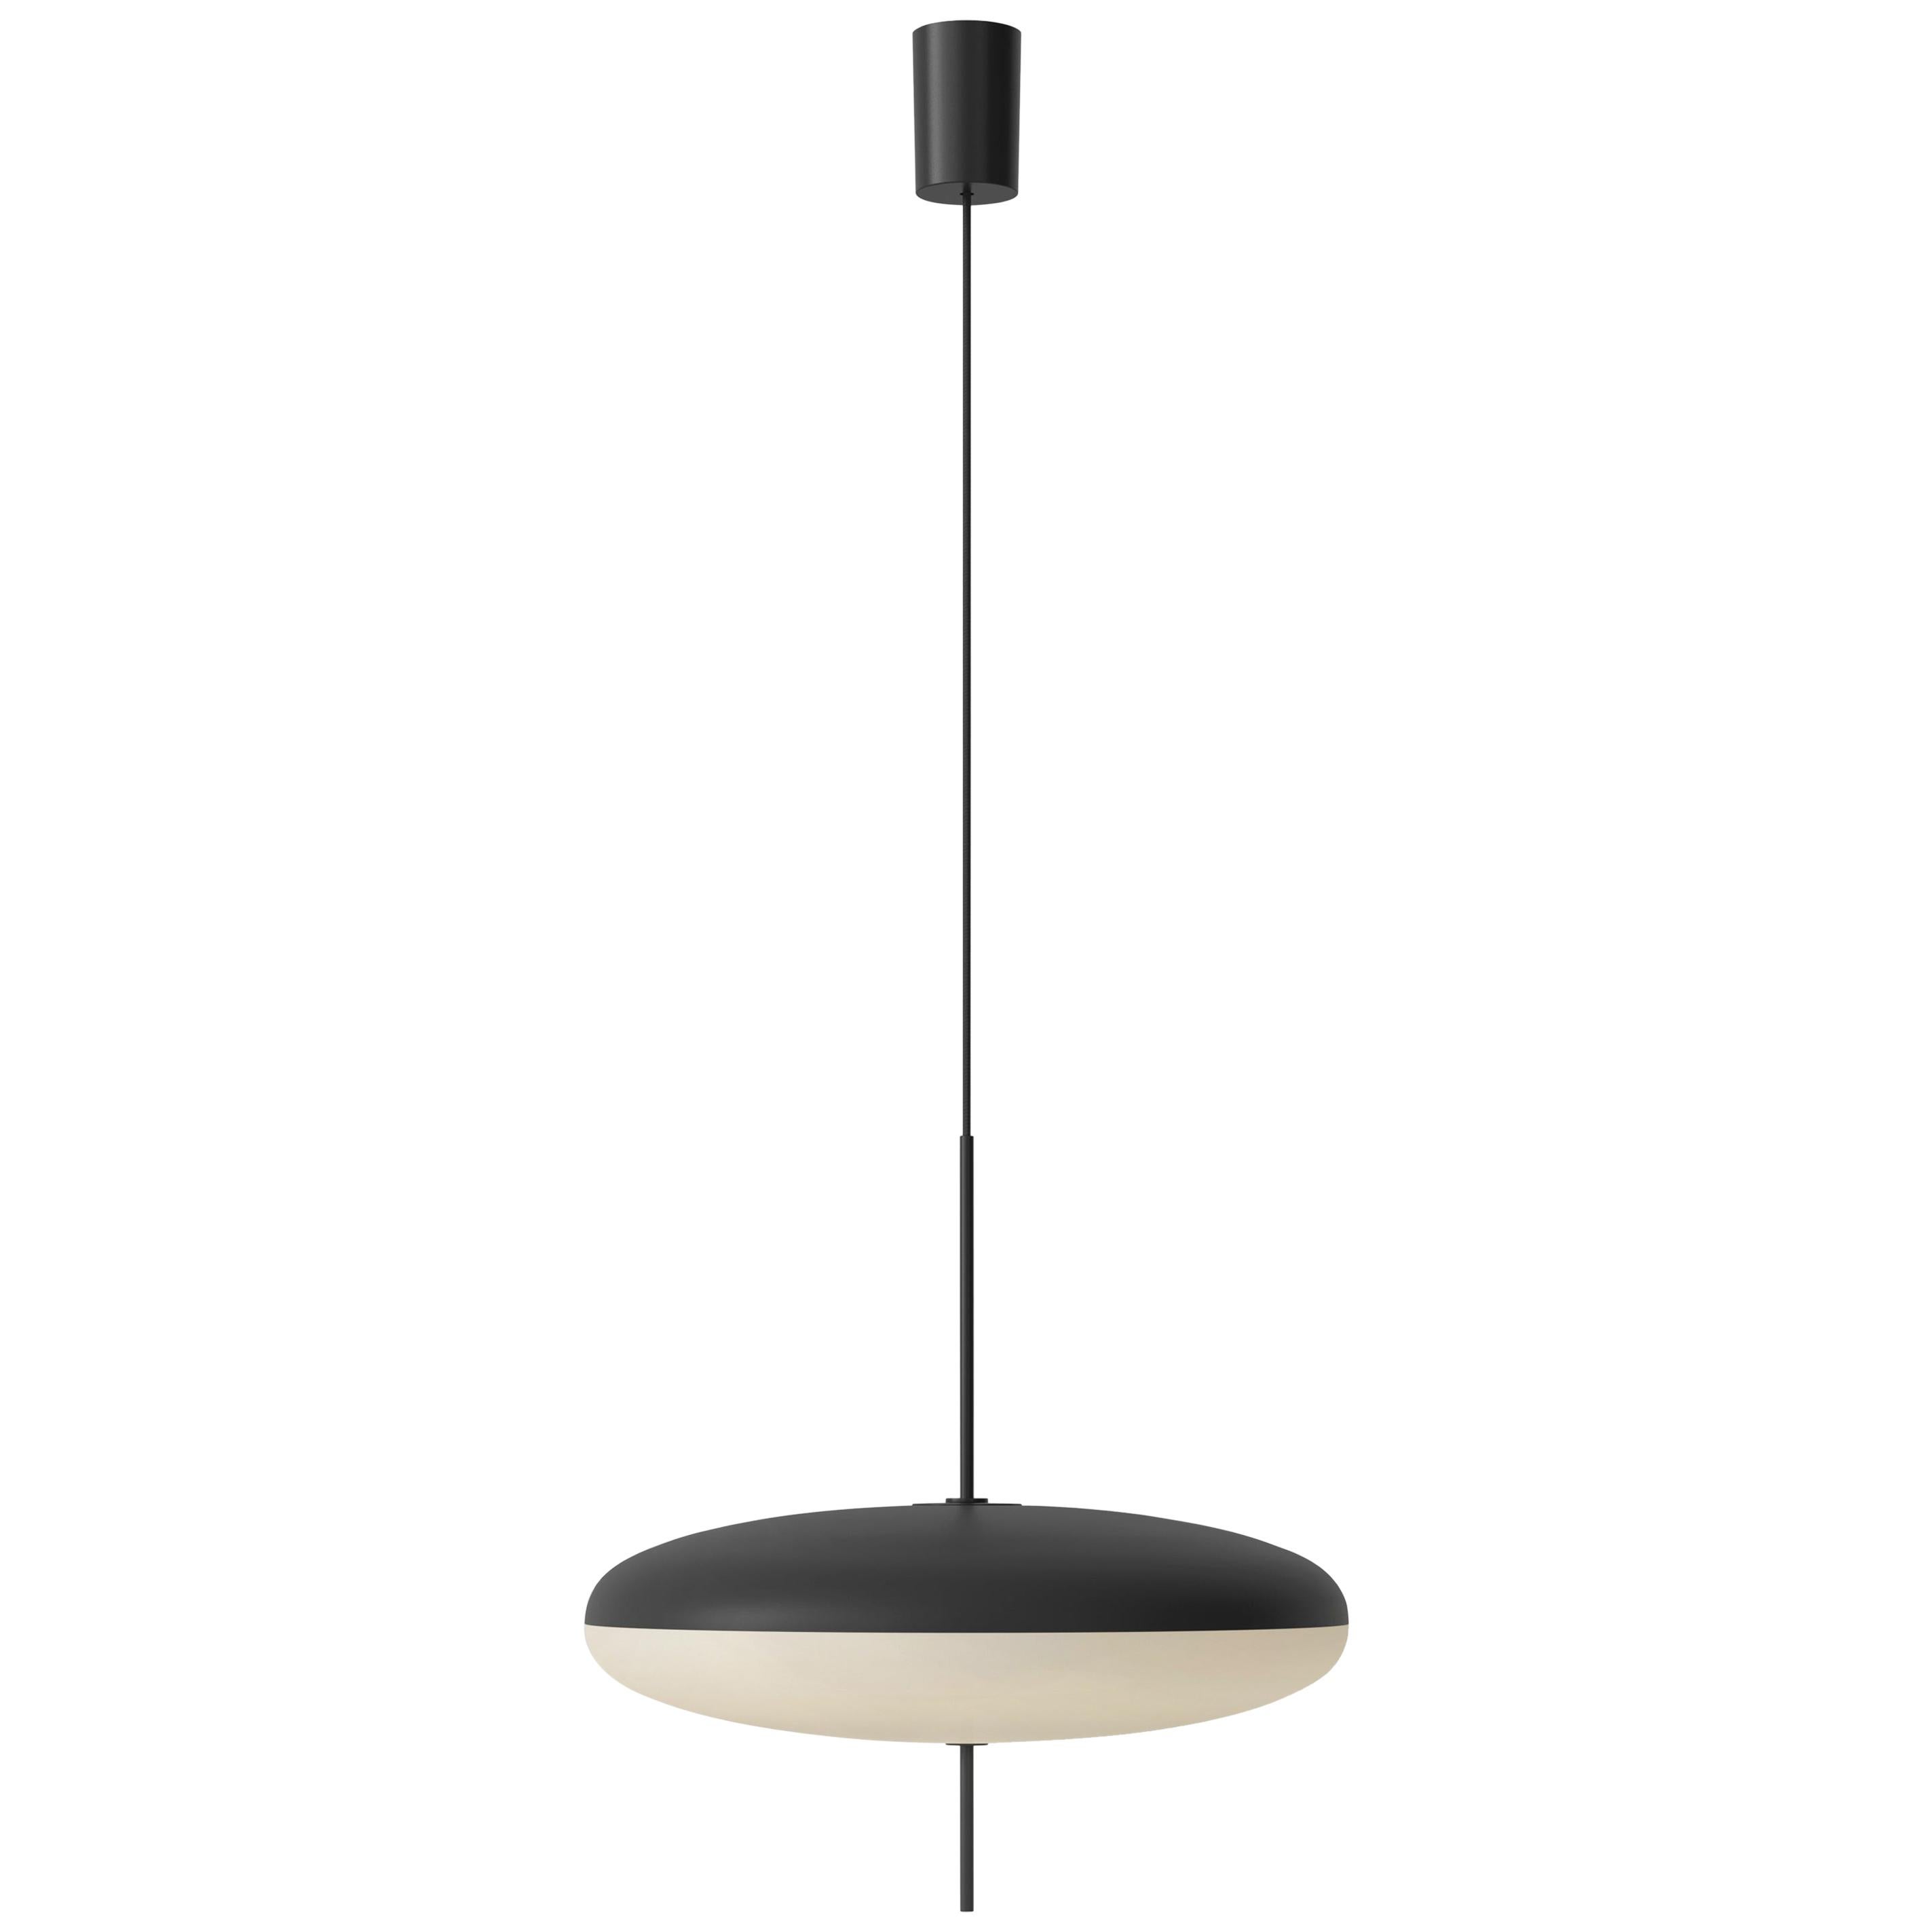 Gino Sarfatti Lamp Model 2065 Black White Diffuser, Black Hardware, Black Cable For Sale